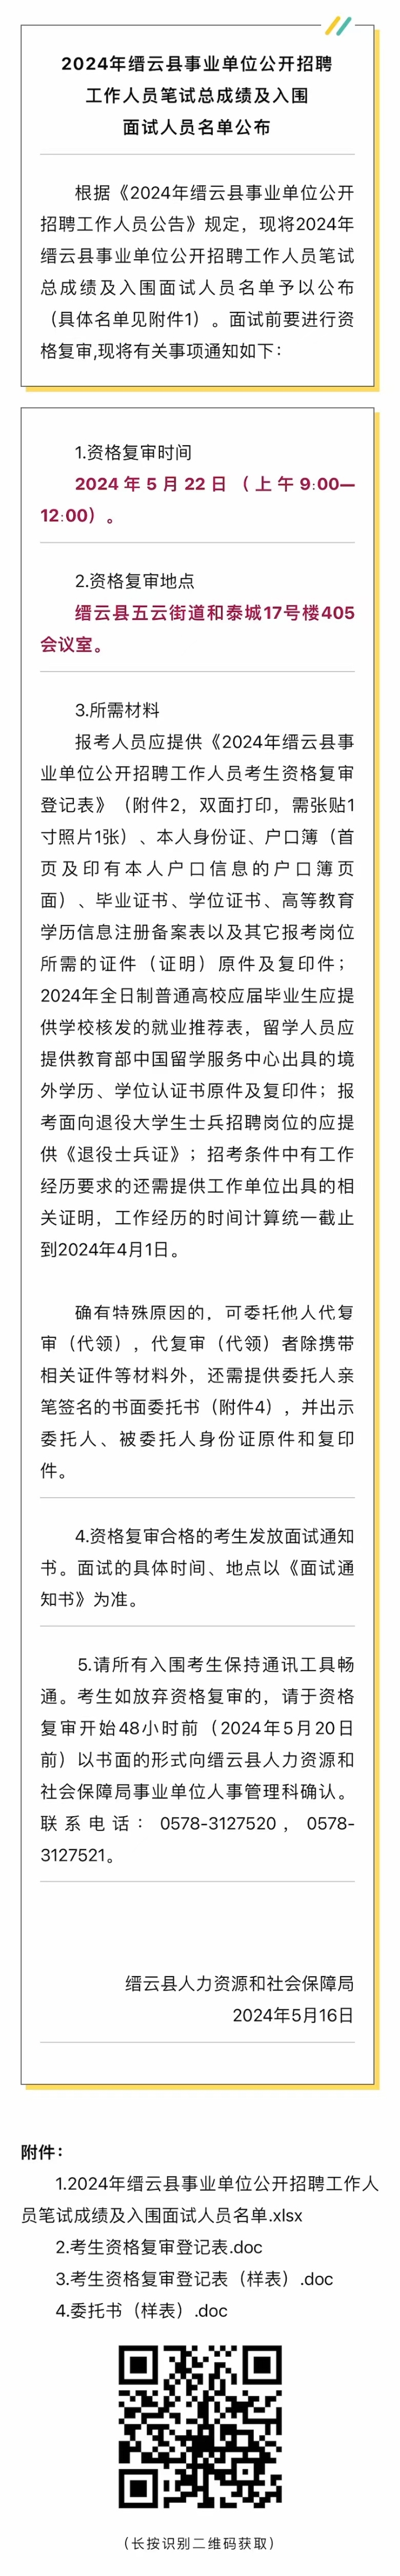 2024年缙云县事业单位公开招聘工作人员笔试总成绩及入围面试人员名单公布.jpg